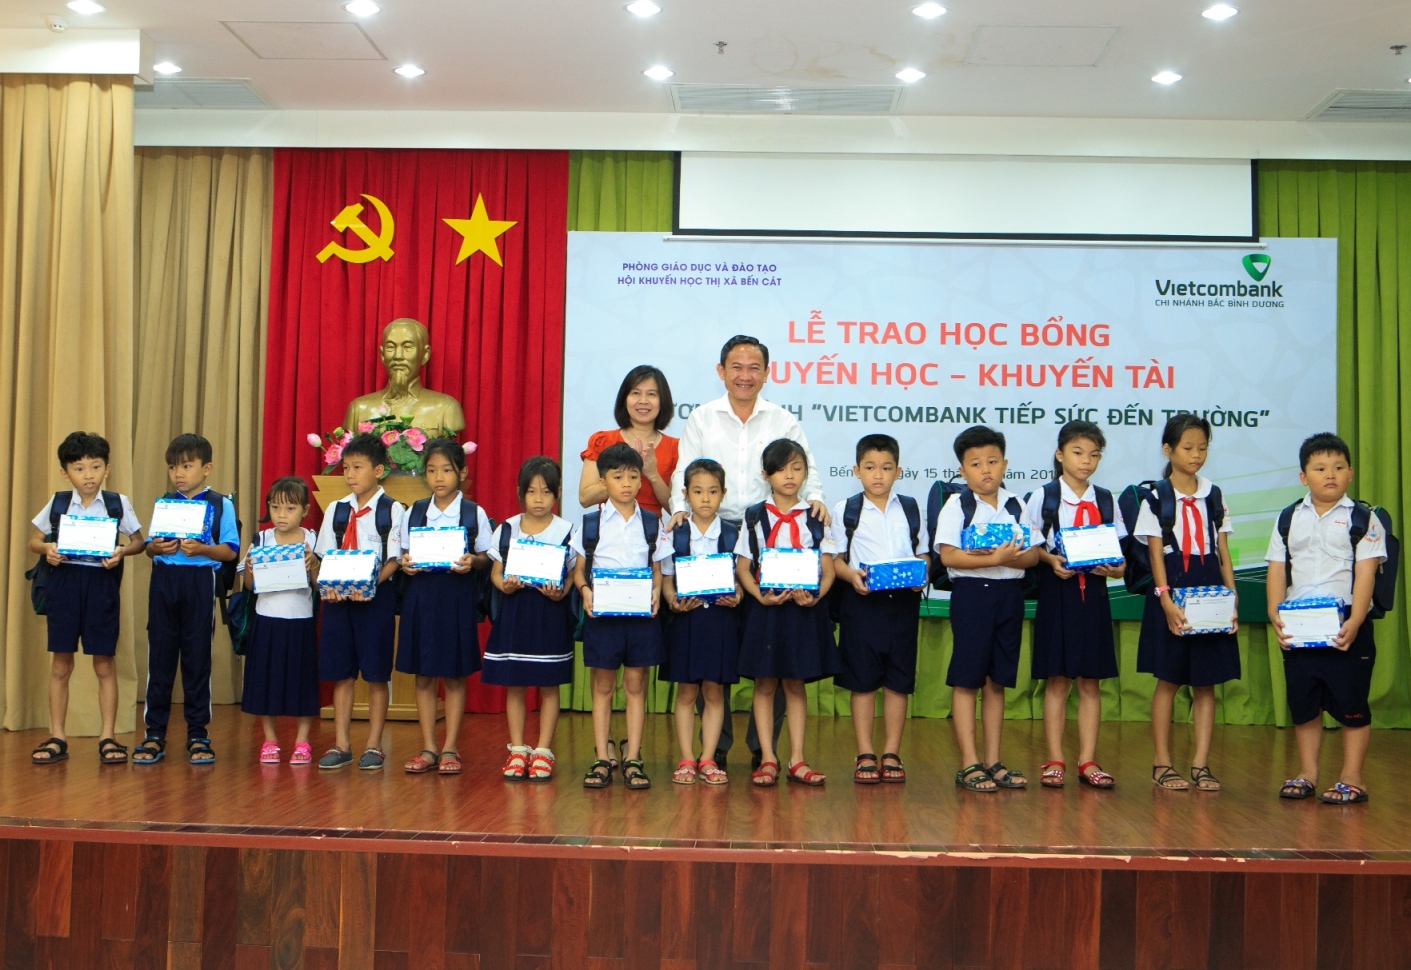 Vietcombank Bắc Bình Dương tặng 235 phần quà và học bổng cho các học sinh nghèo vượt khó tại Ngày hội “Vietcombank tiếp sức đến trường” 